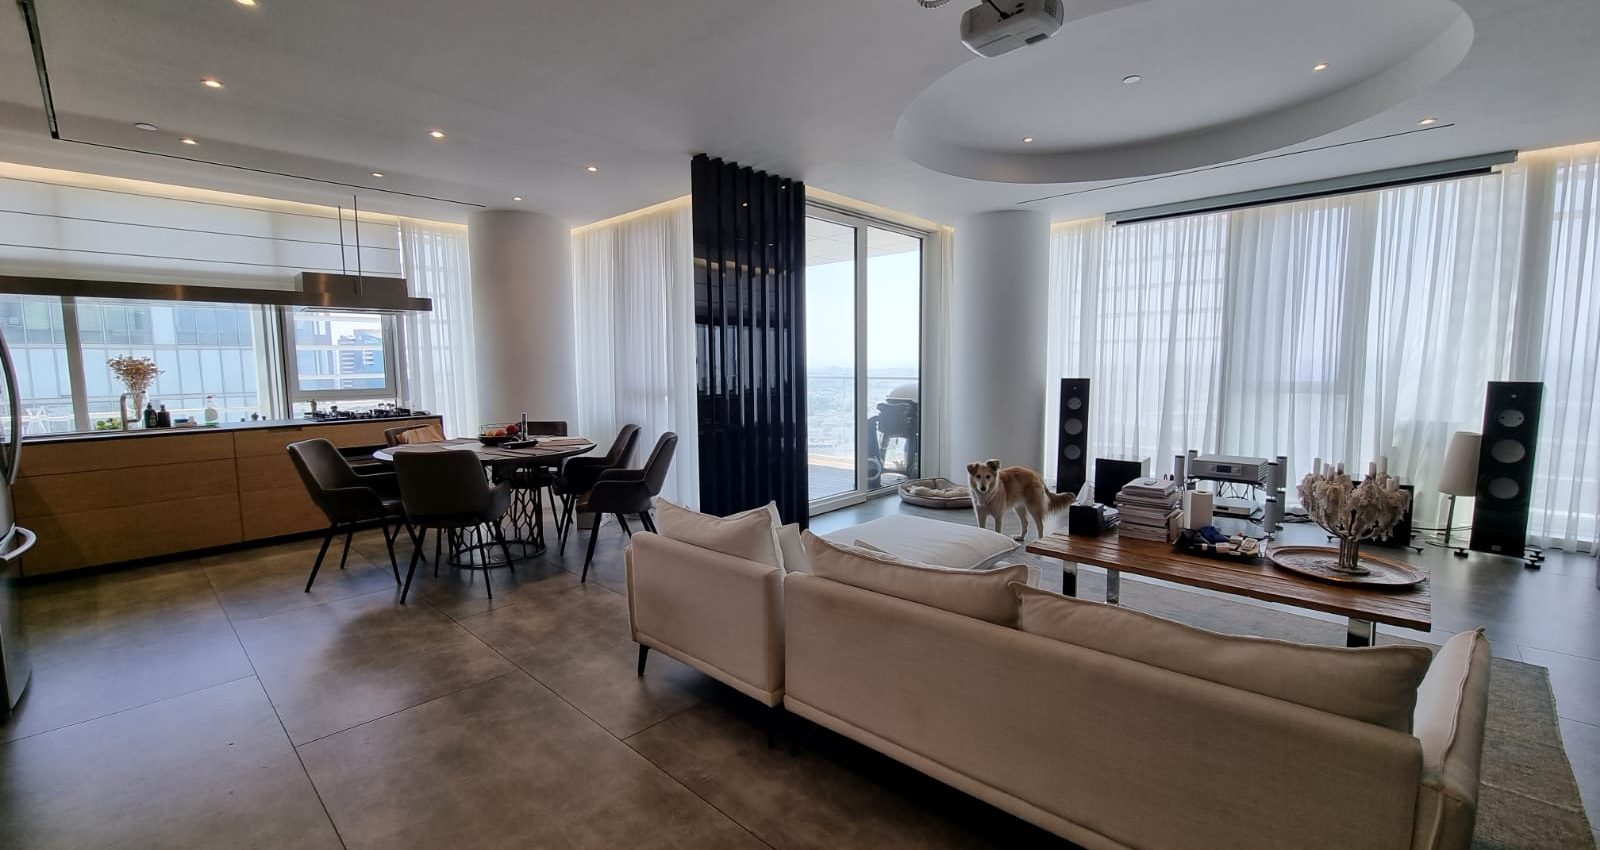 Stunning 2 Bedroom Apartment for Sale in the Meier on Rothschild in Tel Aviv